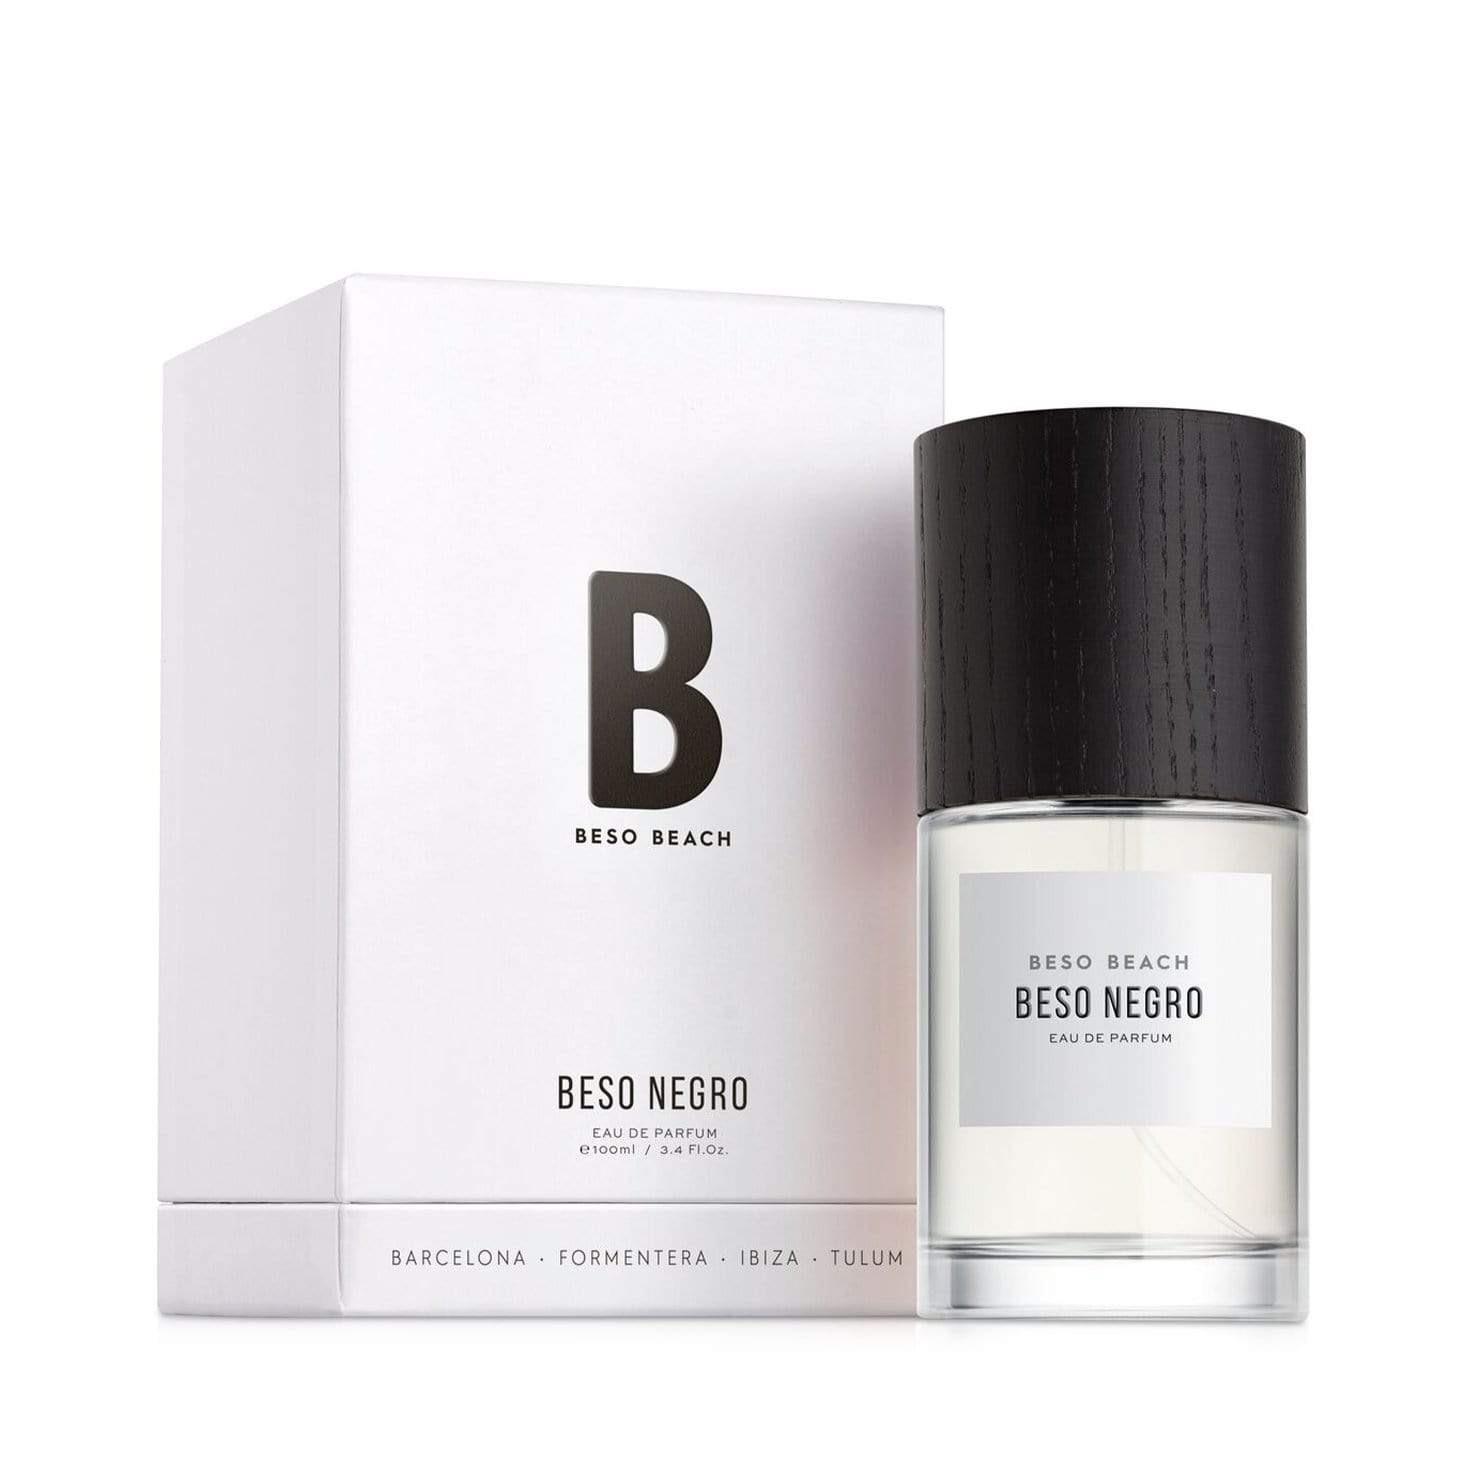 Beso Negro Eau de Parfum - Men's Fragrance at Menzclub